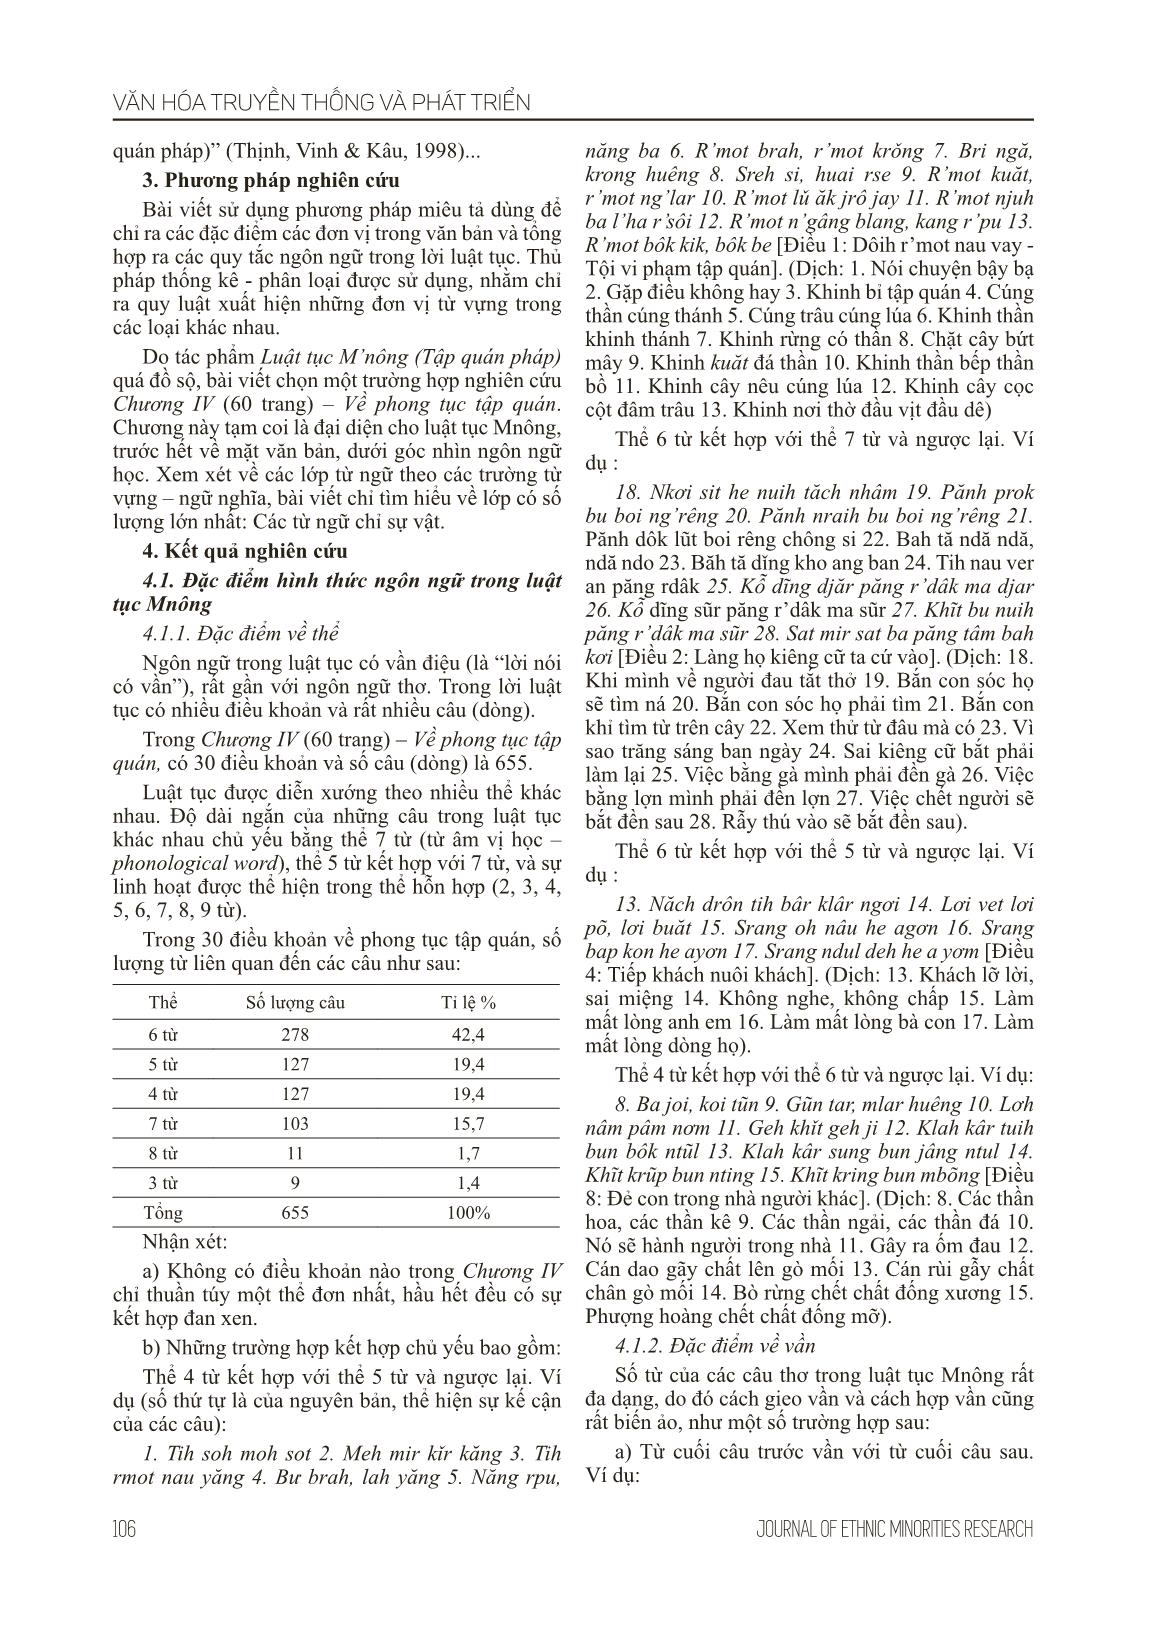 Đặc điểm ngôn ngữ trong luật tục Mnông (Nghiên cứu trường hợp: chương IV - Về phong tục tập quán) trang 3